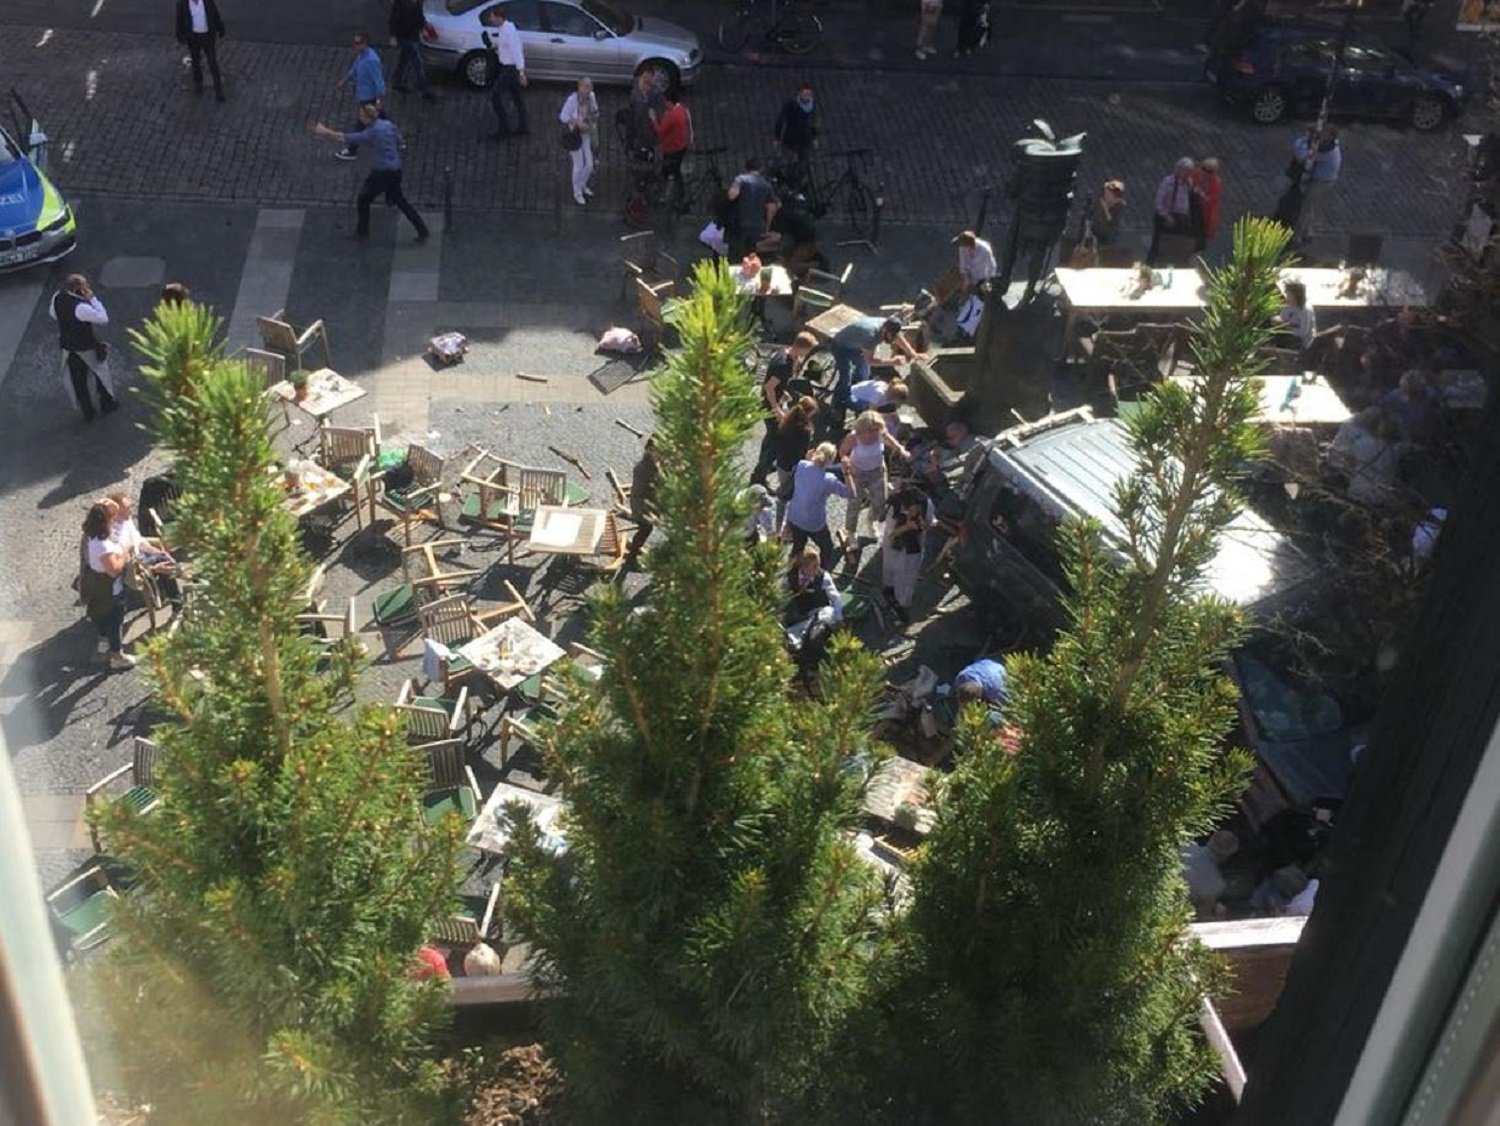 La policia descarta l'autoria terrorista en l'atropellament de Münster, que ha fet 3 morts